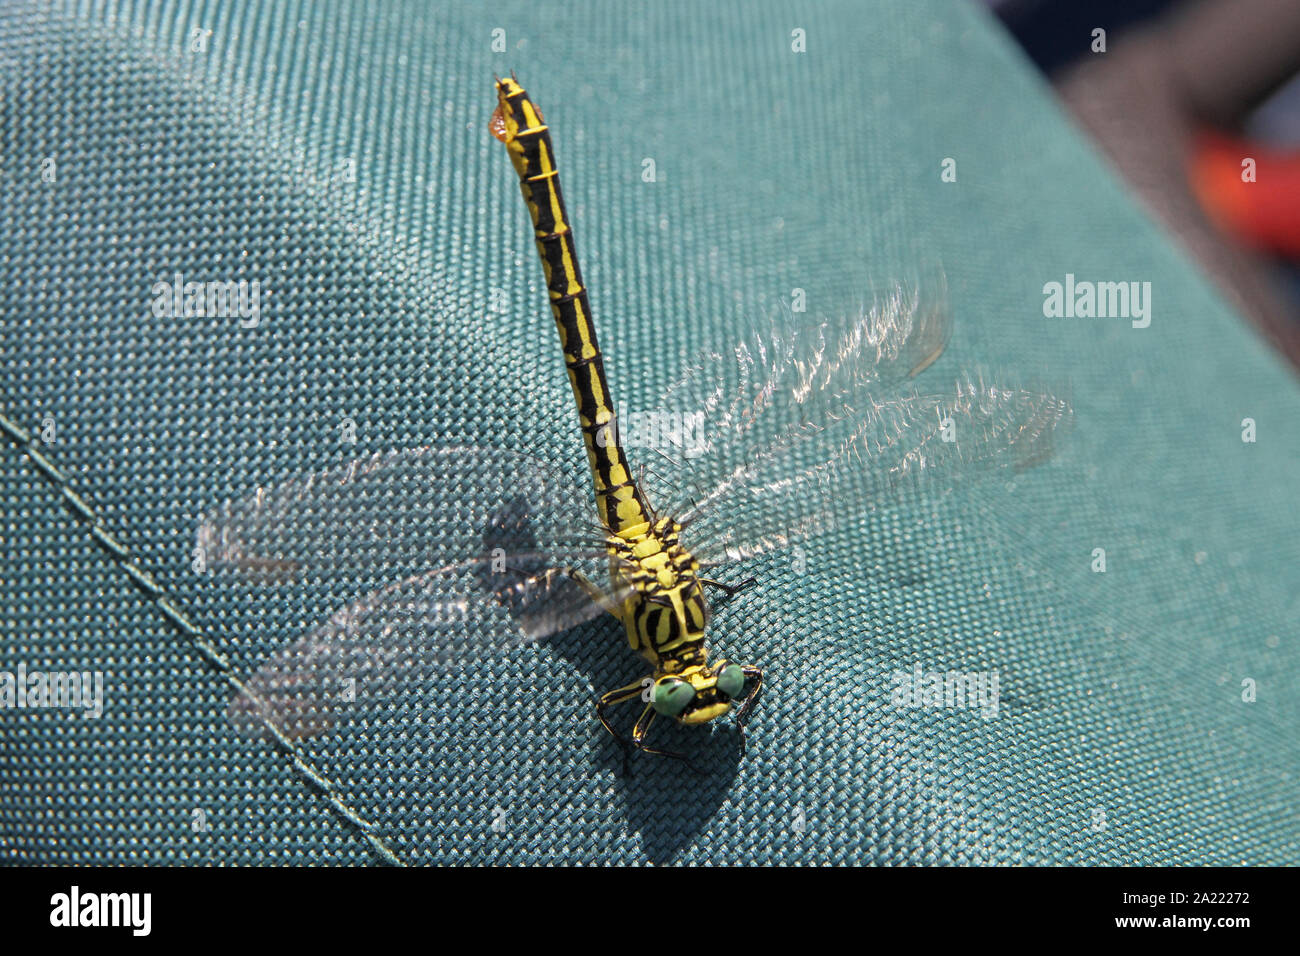 Goldenring balcanica Dragonfly, Cordulegaster, su una sedia su una nave da crociera, Panchevo, Serbia. Foto Stock